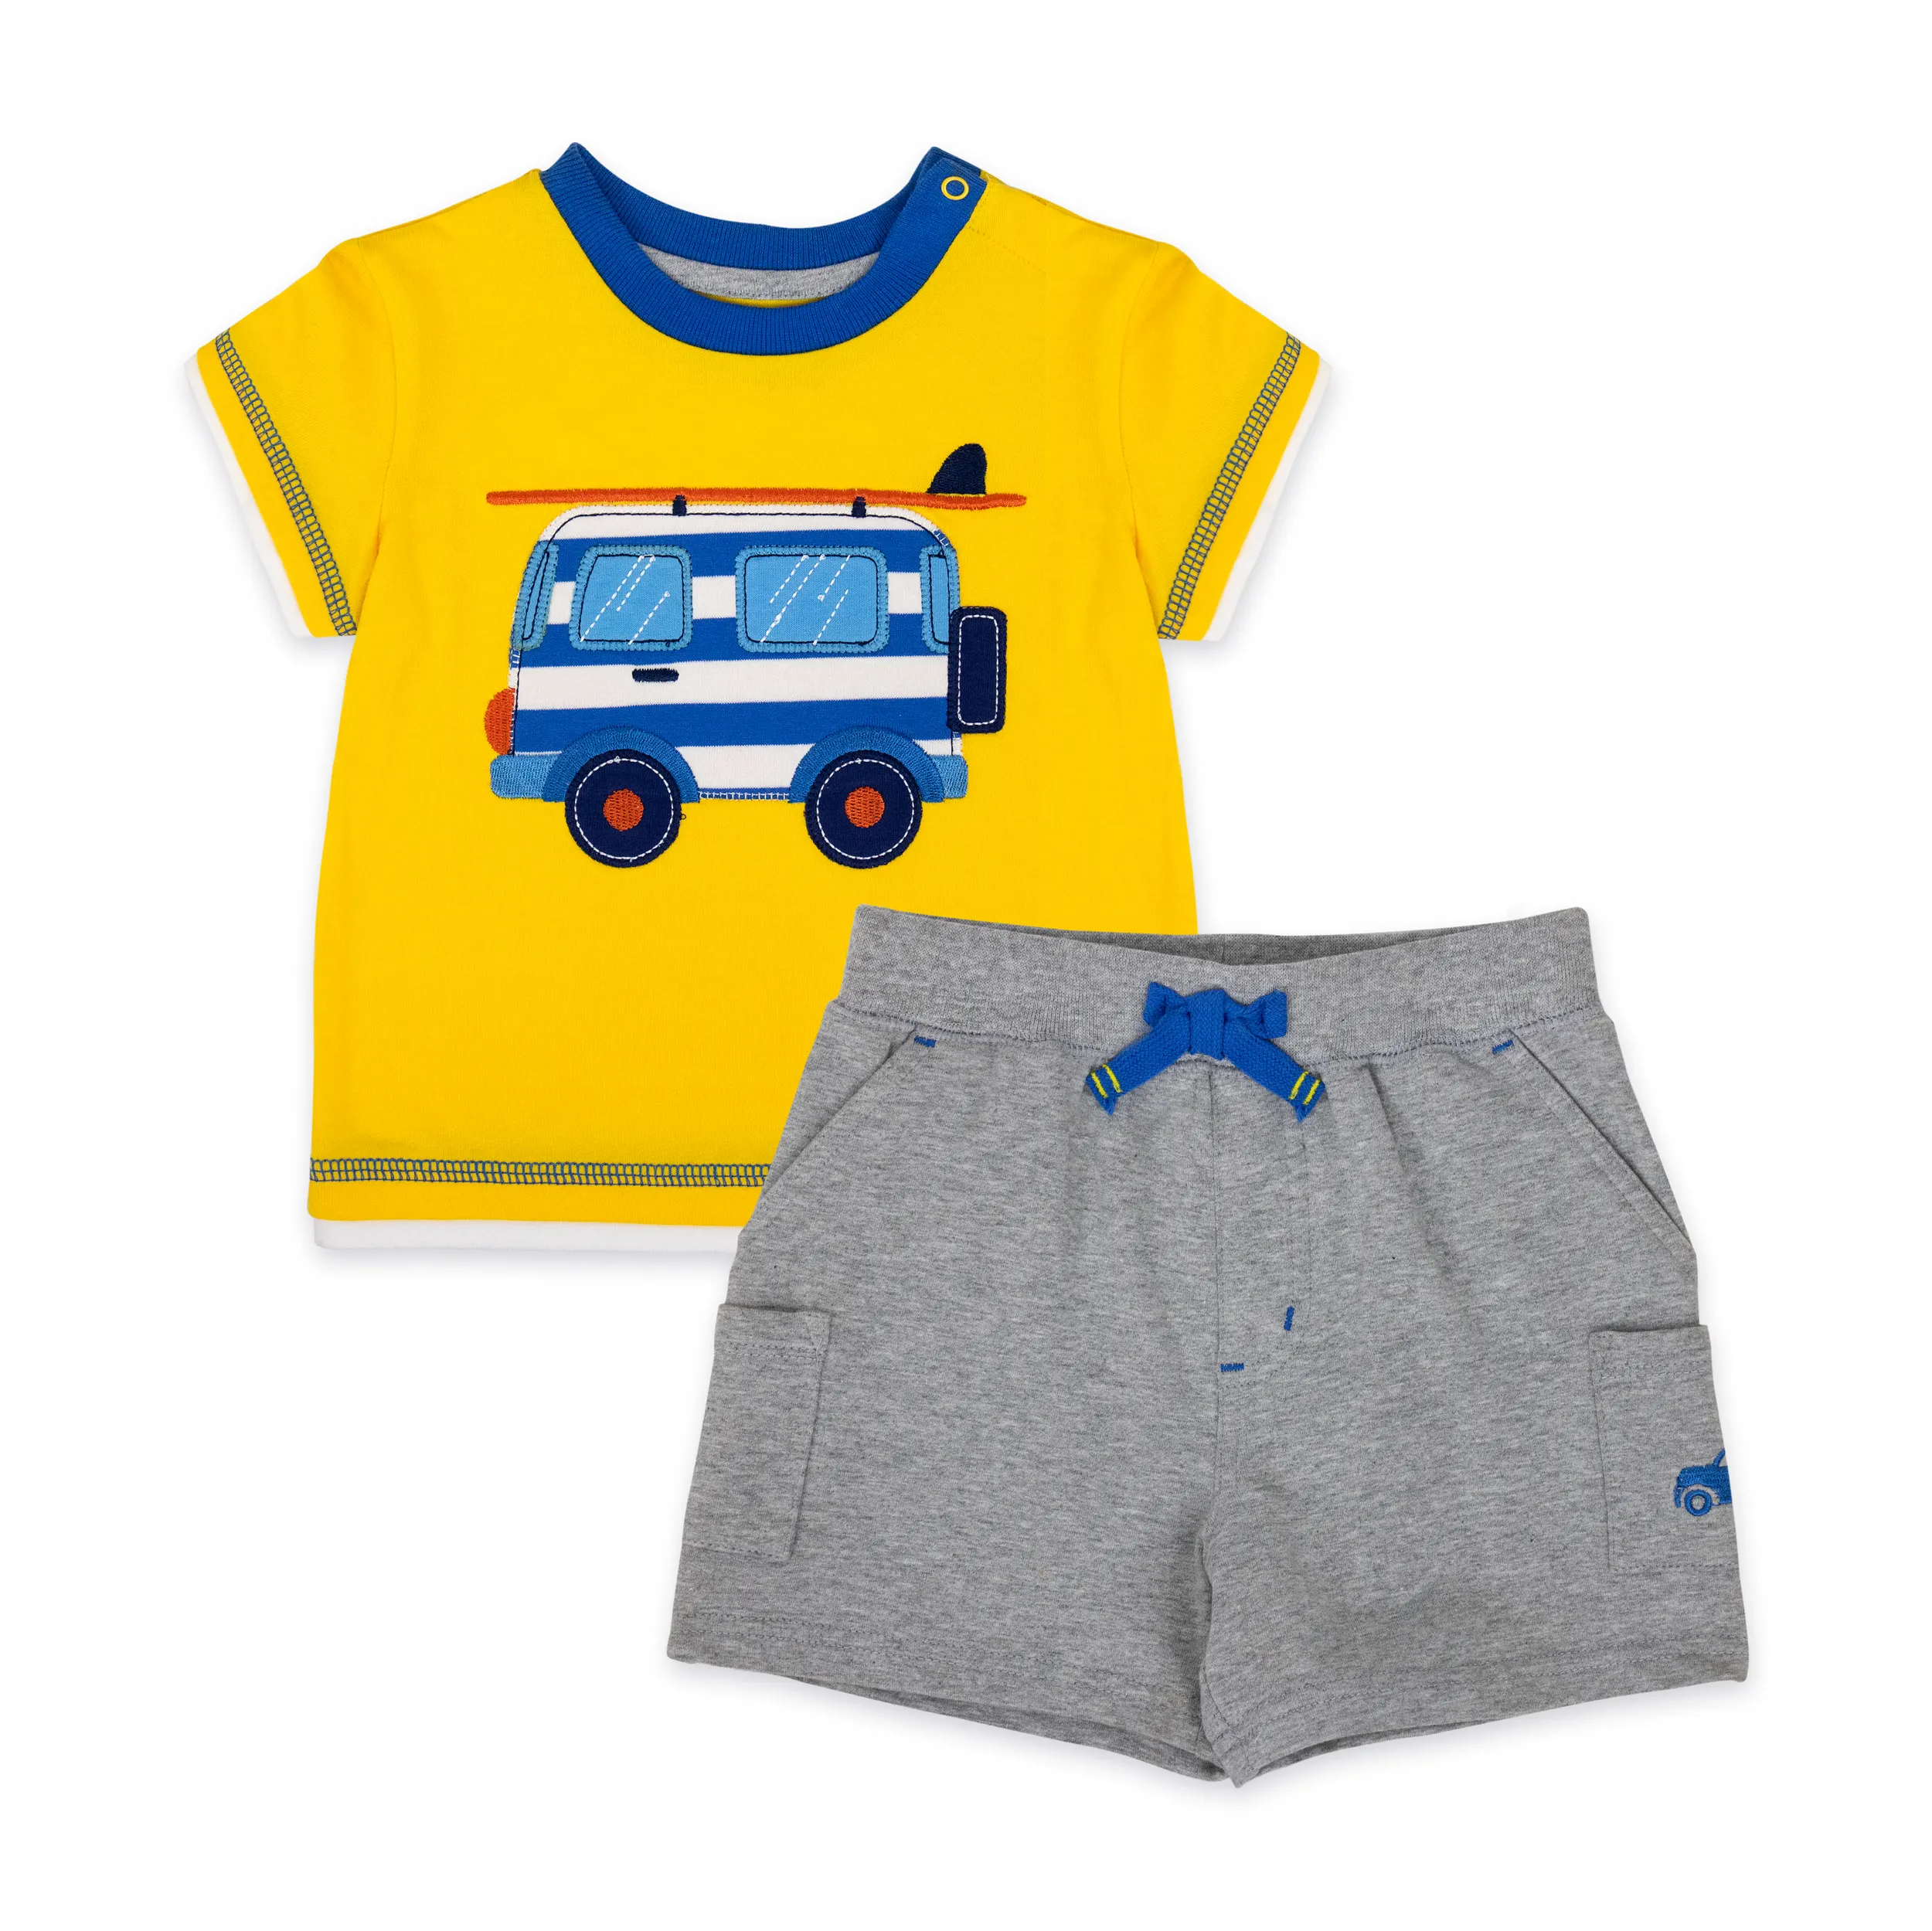 Pantalones de manga corta personalizados para niños pequeños, algodón, amarillo, gris, 2020 OEM, conjunto de ropa